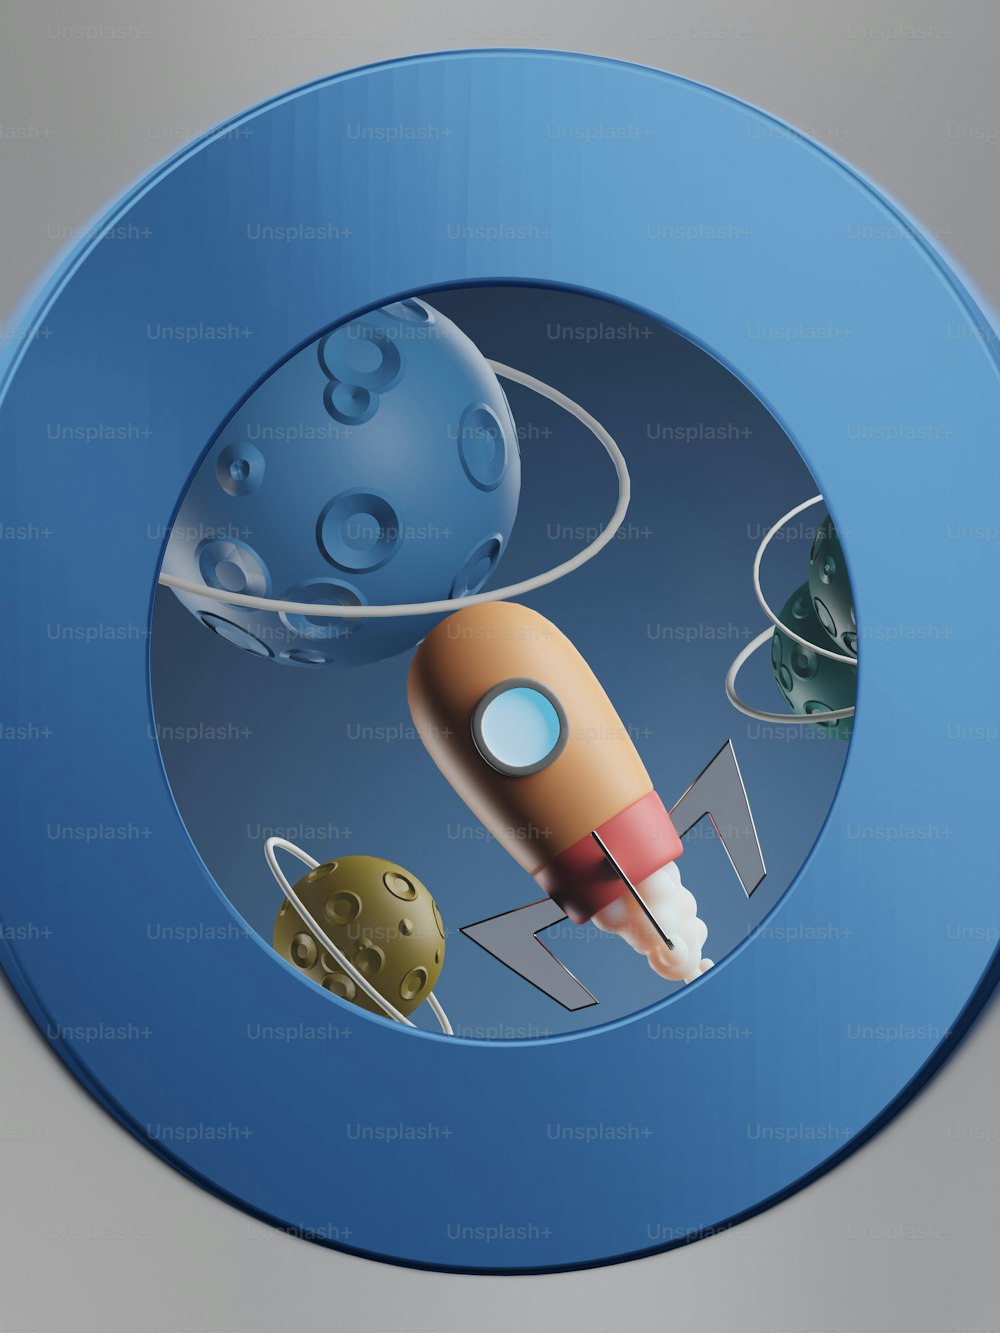 ロケットと惑星の写真が描かれた青いボタン